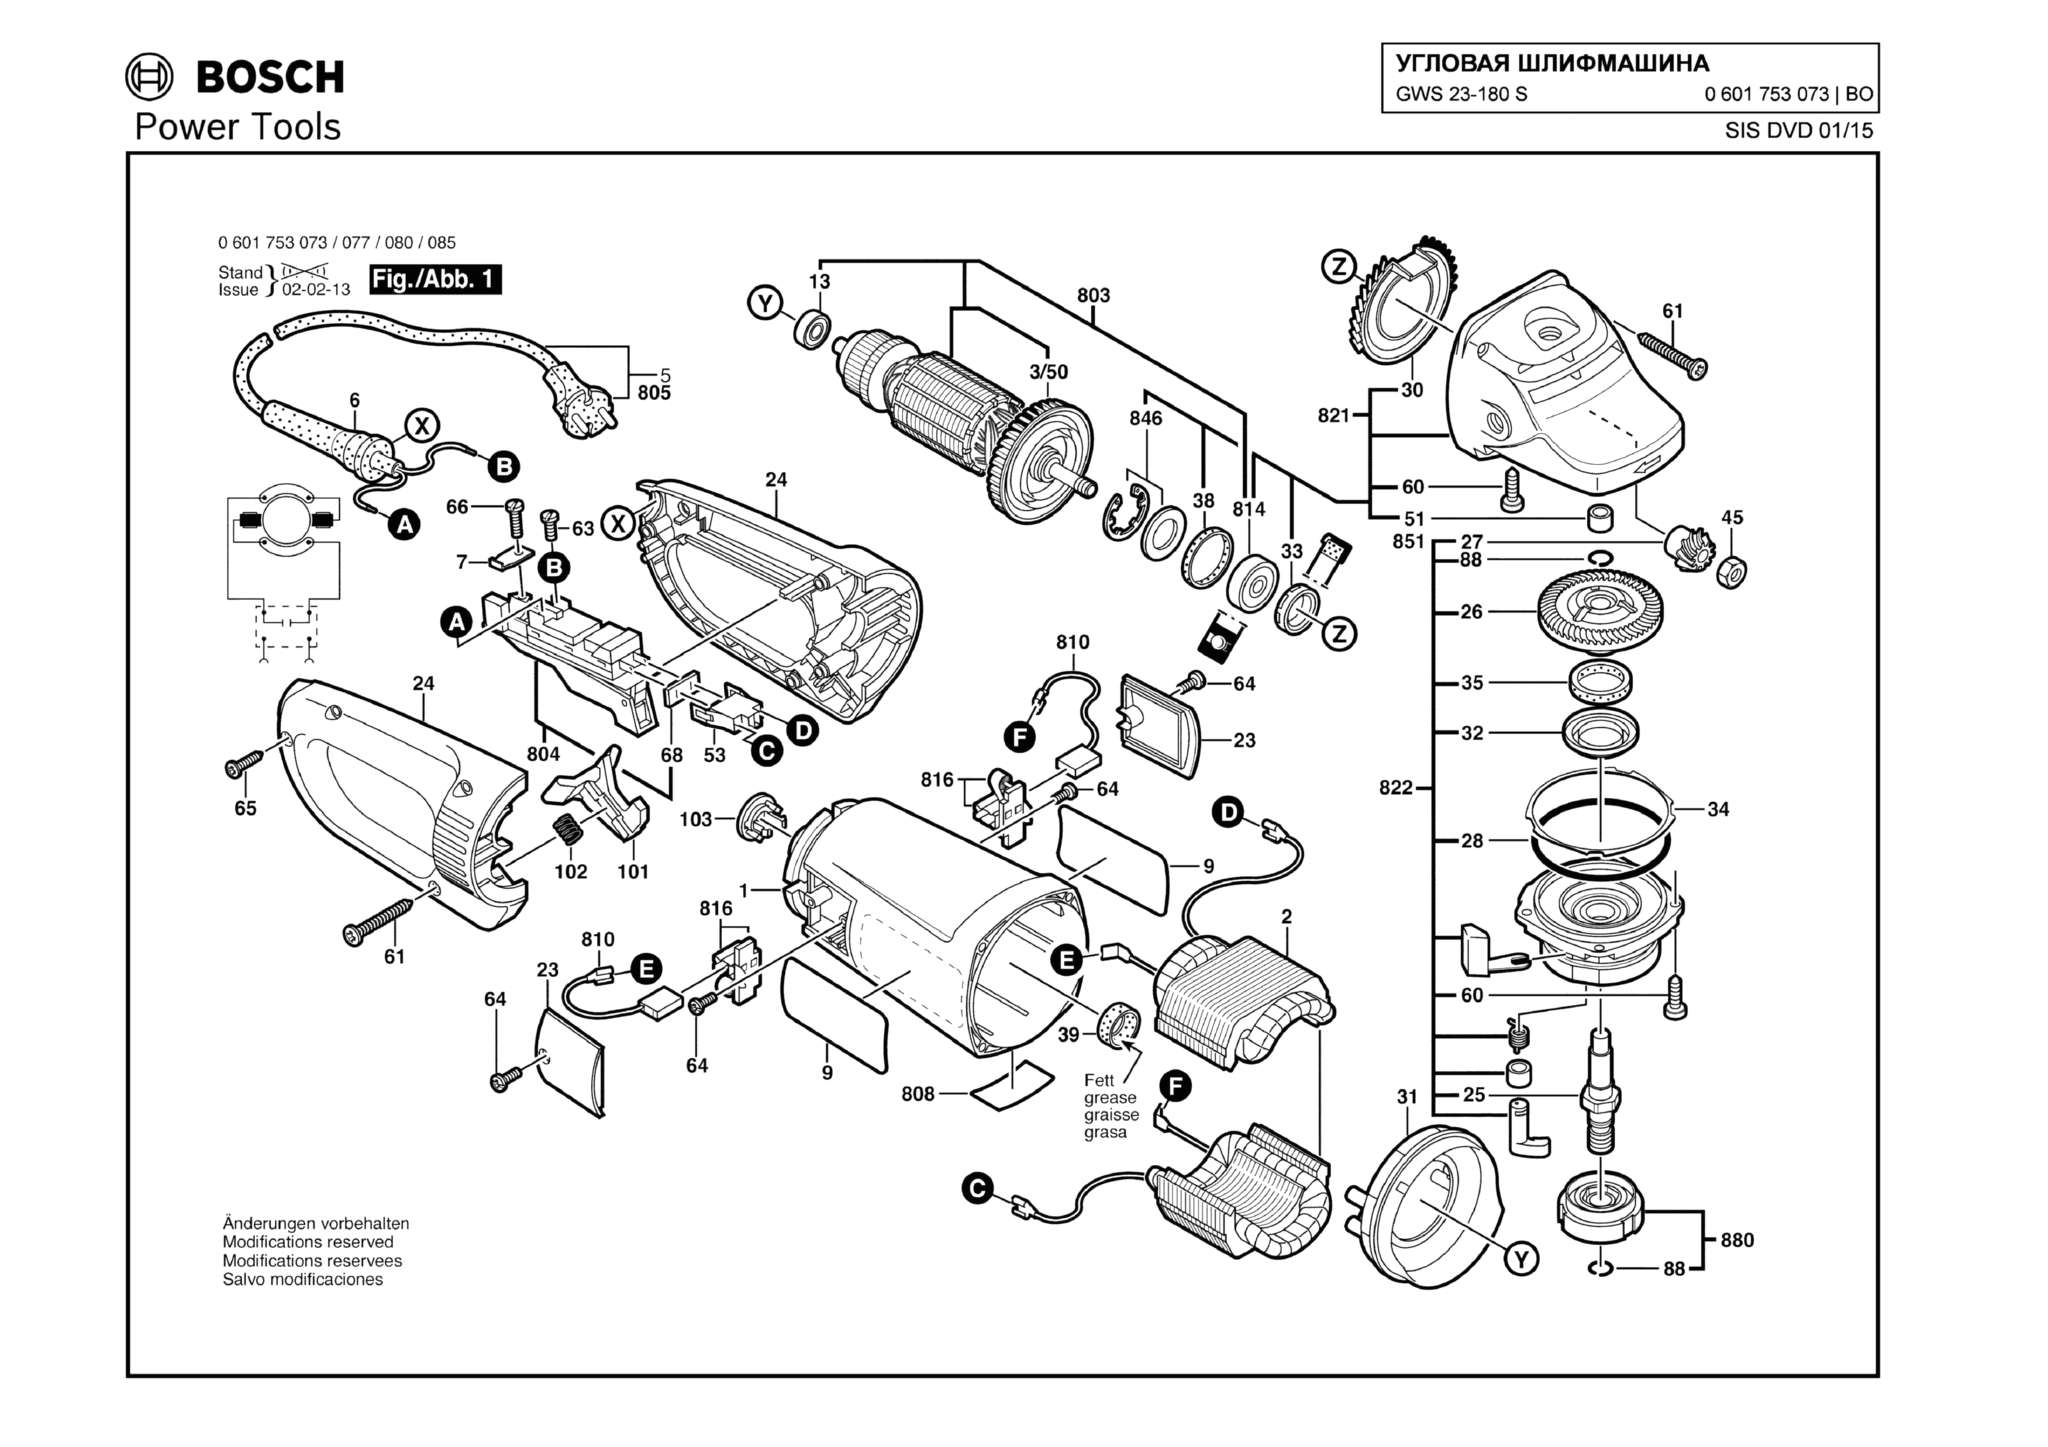 Запчасти, схема и деталировка Bosch GWS 23-180 S (ТИП 0601753073)